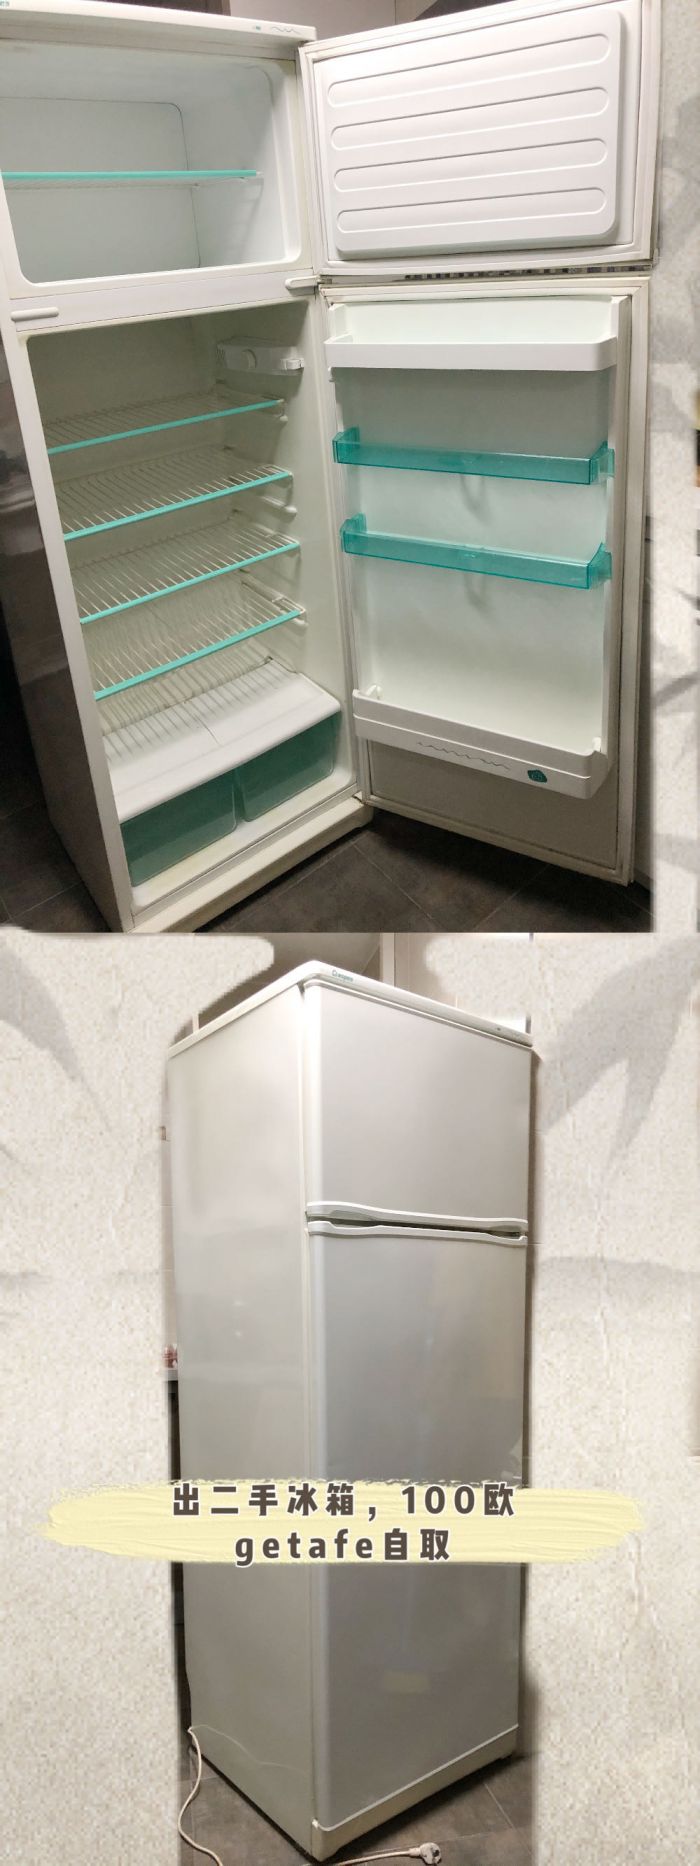 出二手冰箱，100欧，getafe自取 wx：1092718122